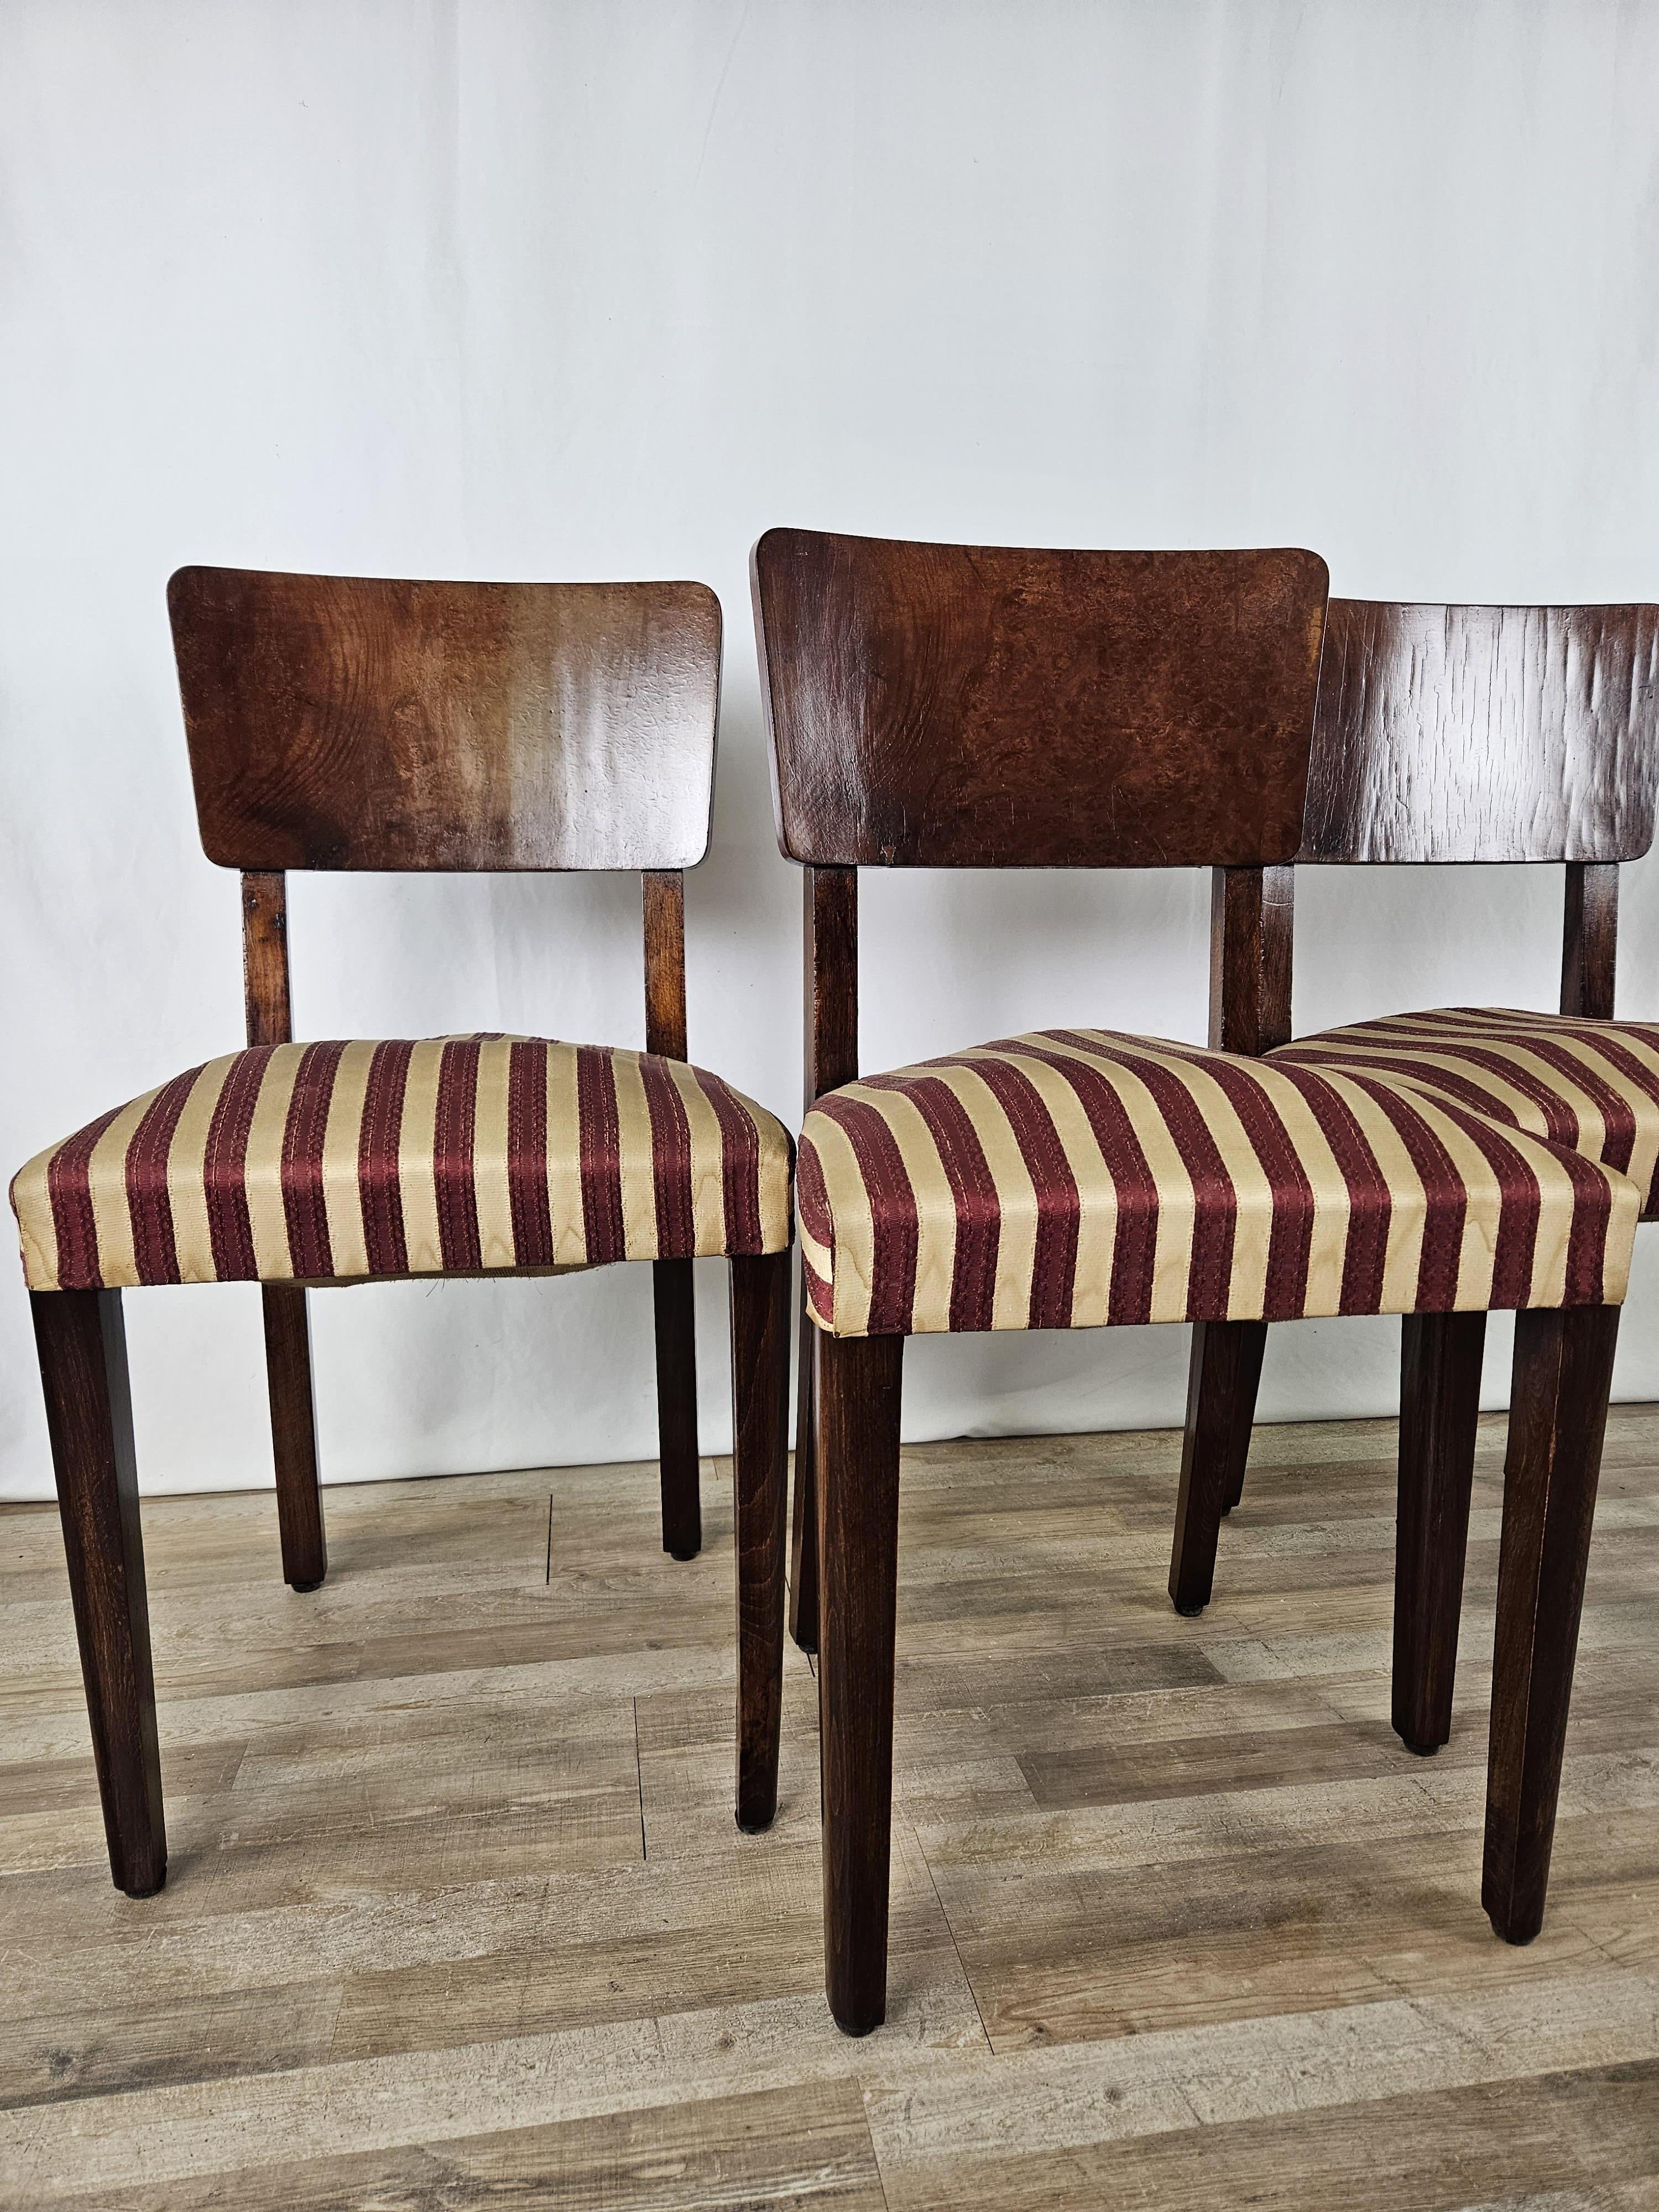 Set di sedie in radica di noce dei primi anni '40, epoca Art Decò produzione italiana.

La struttura delle sedie è stata lucidata ad olio e gommalacca, le sedute sono rivestite in tessuto originale dell'epoca pertanto andrebbe sostituita la stoffa o